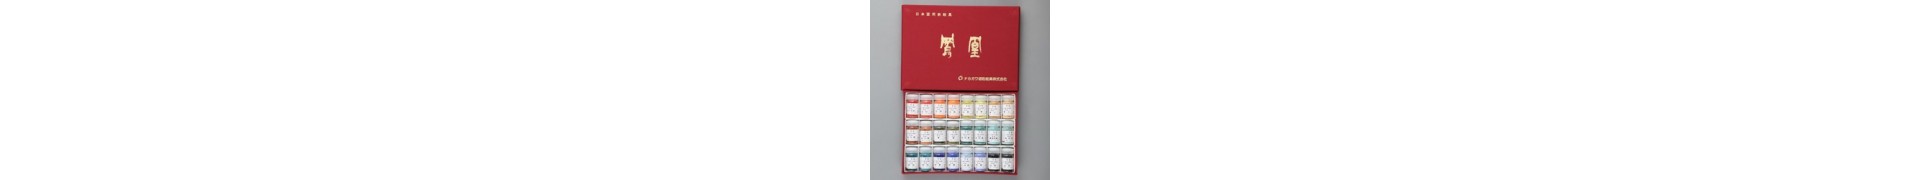 Boite pigment CDQV - 24 pigments japonais - Boite rouge